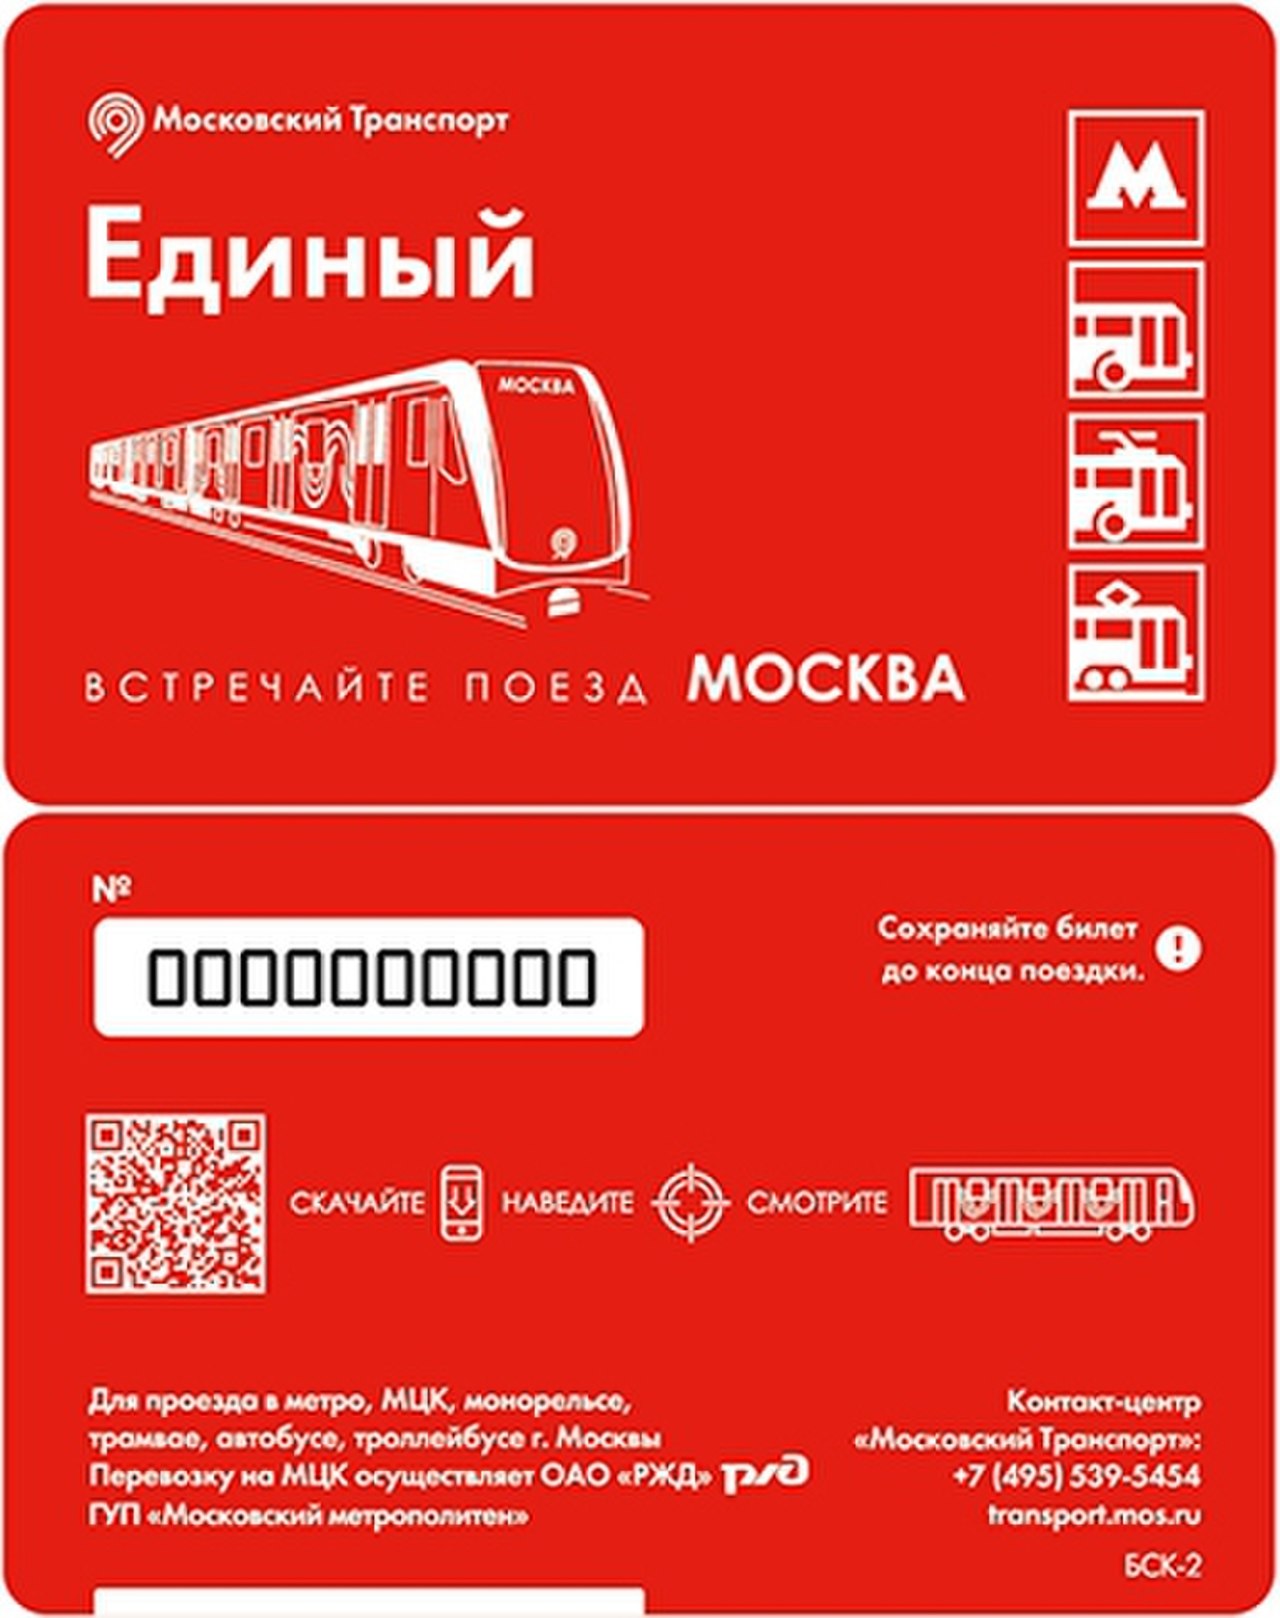 Единый билет в метро